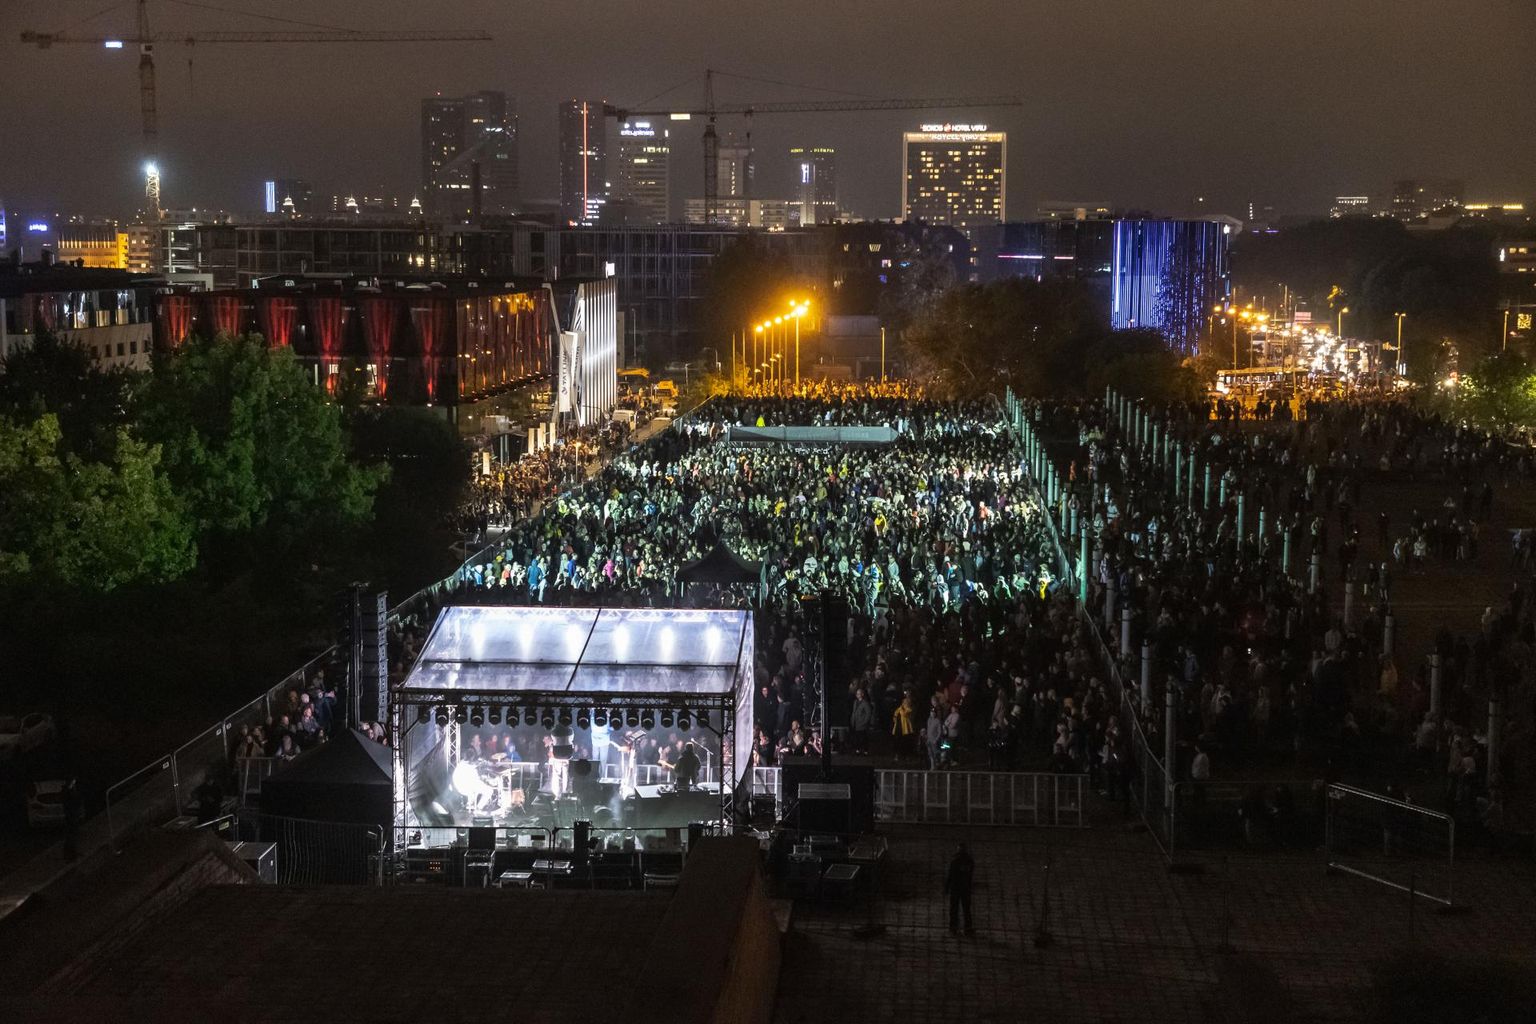 Samsungi drooni-show ja kontsert linnahalli katusel.
 